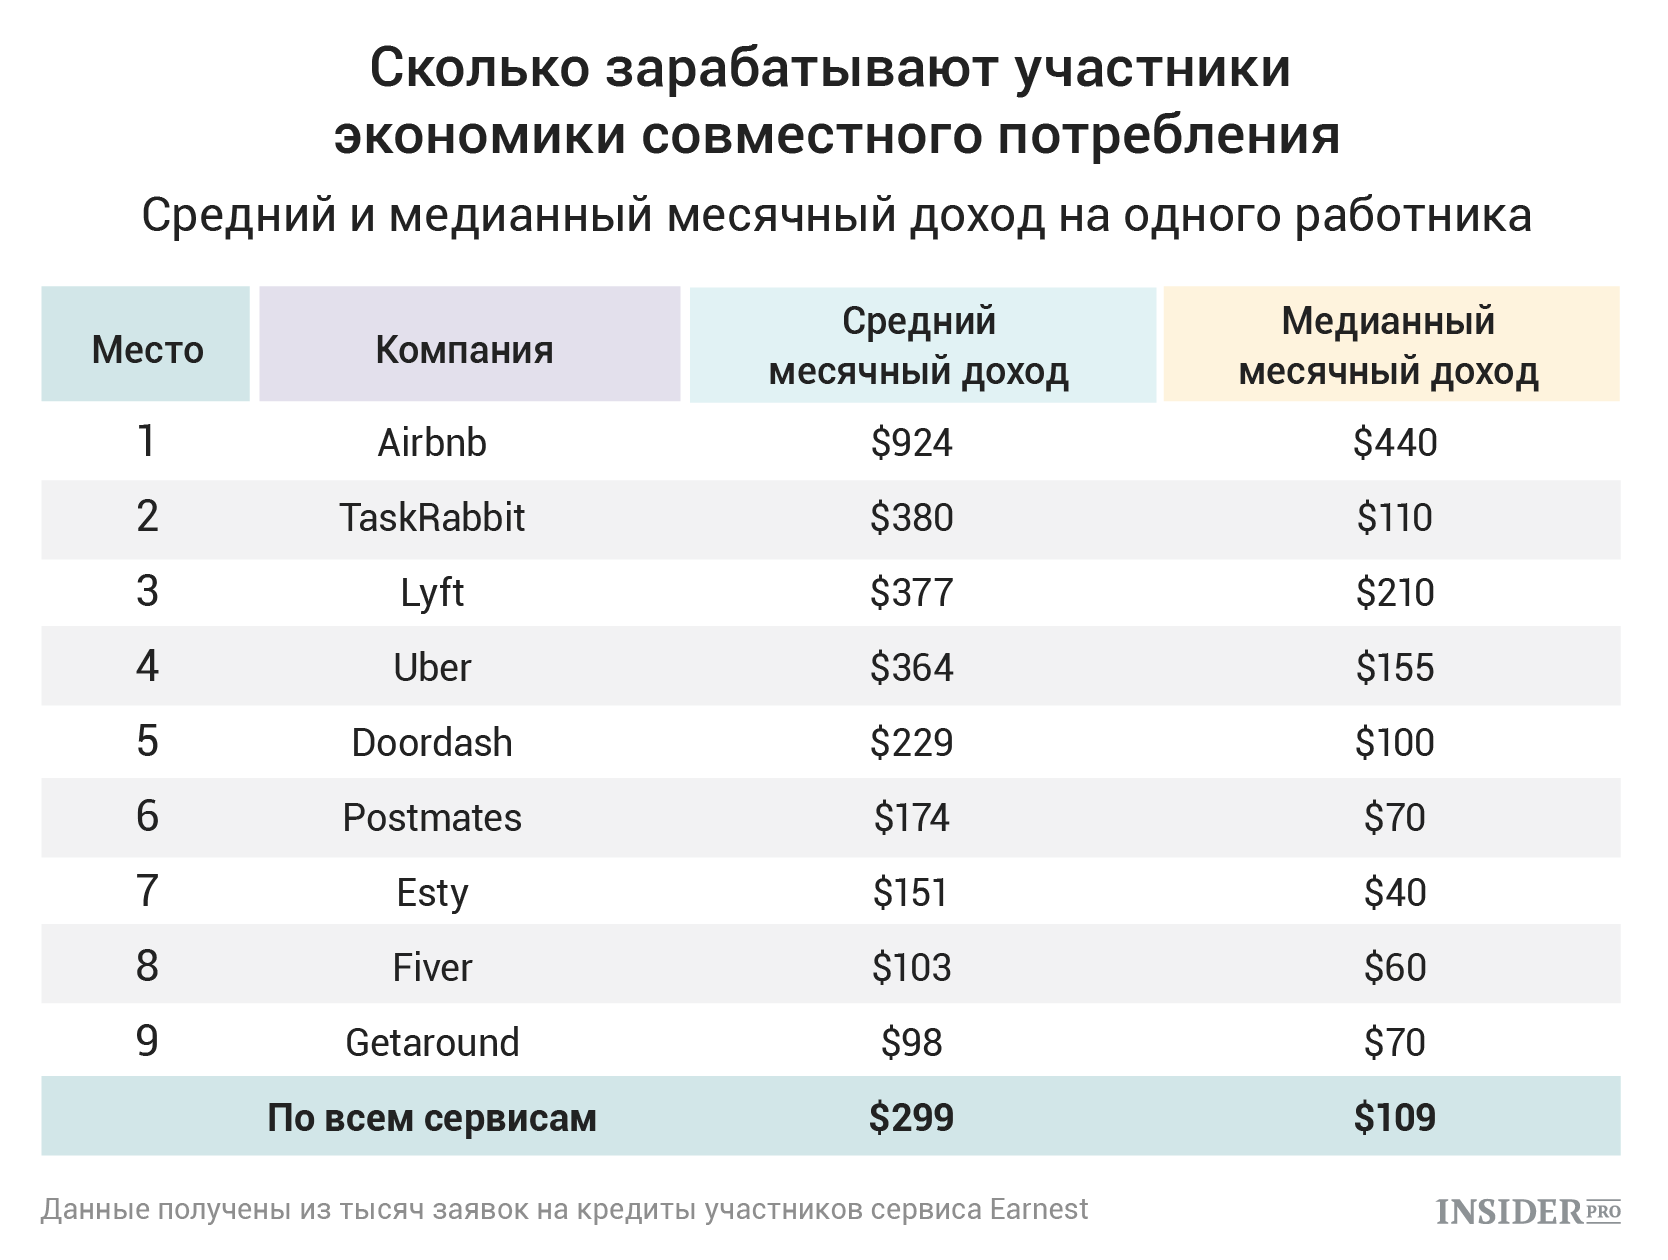 Экономика совместного потребления в России